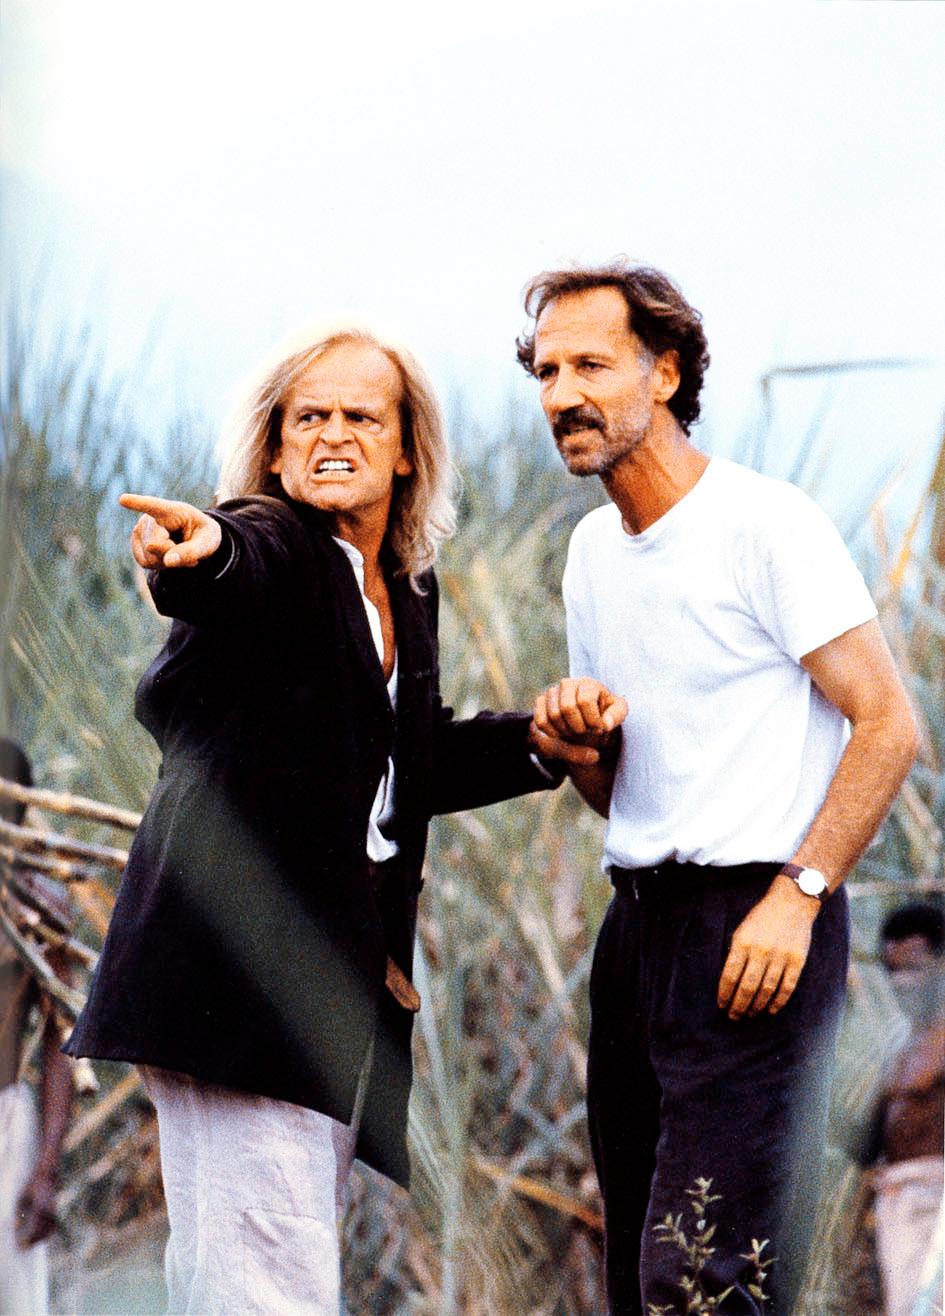 Lyckat hatsamarbete Skådespelaren Klaus Kinski (till vänster) och regissören Werner Herzog (till höger) ömsom älskade, ömsom hatade varandra. Vid ett tillfälle greppade den temperamentsfulle Kinski tag i ett gevär och började skjuta mot Herzog. De fortsatte sitt samarbete även efter incidenten. Sammanlagt gjorde de fem klassiska filmer tillsammans.